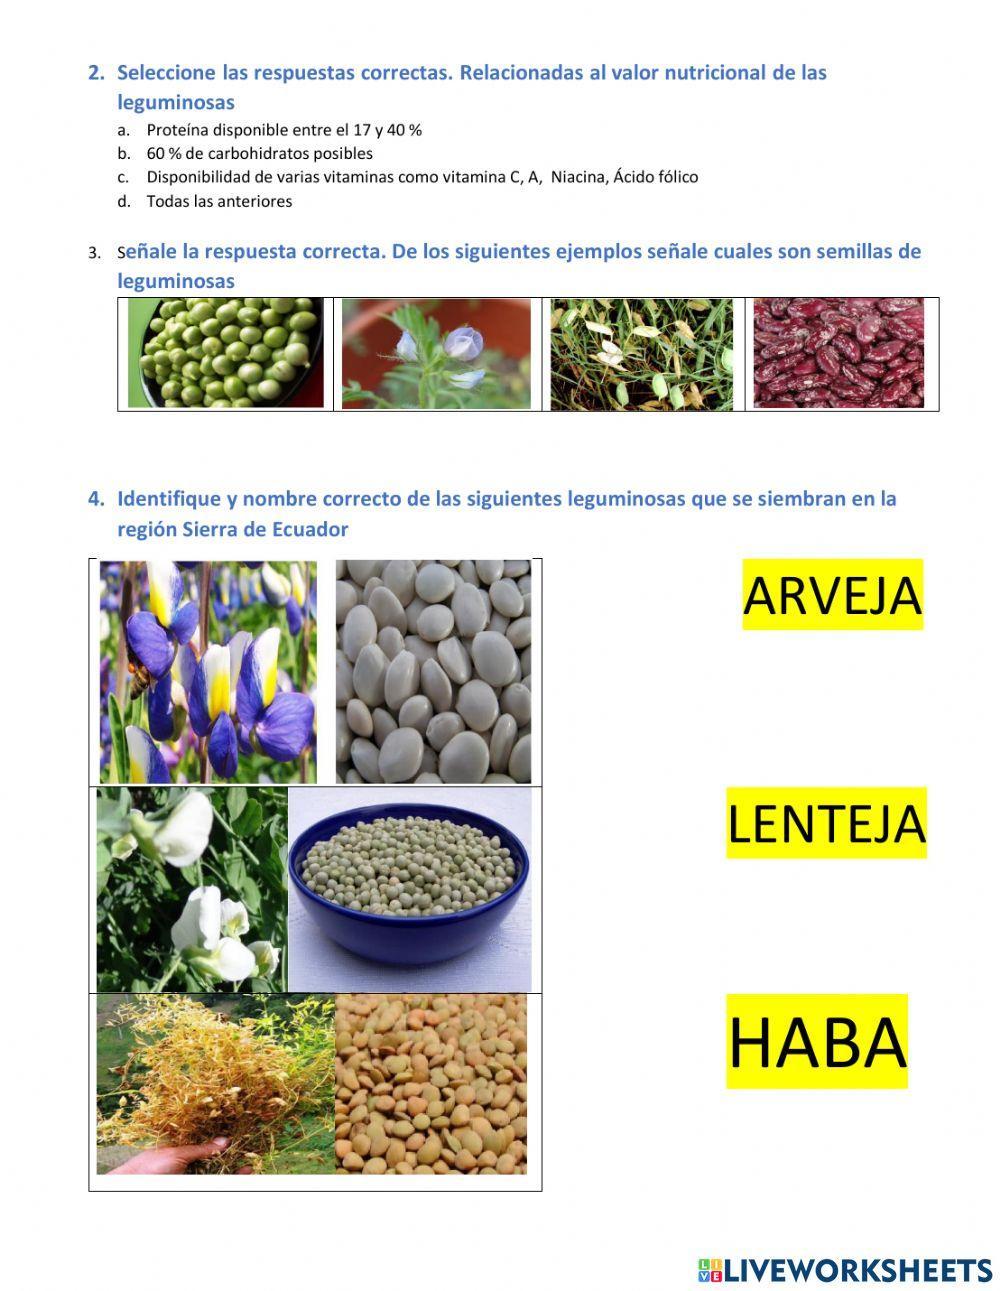 Siembra y cultivo de leguminosas